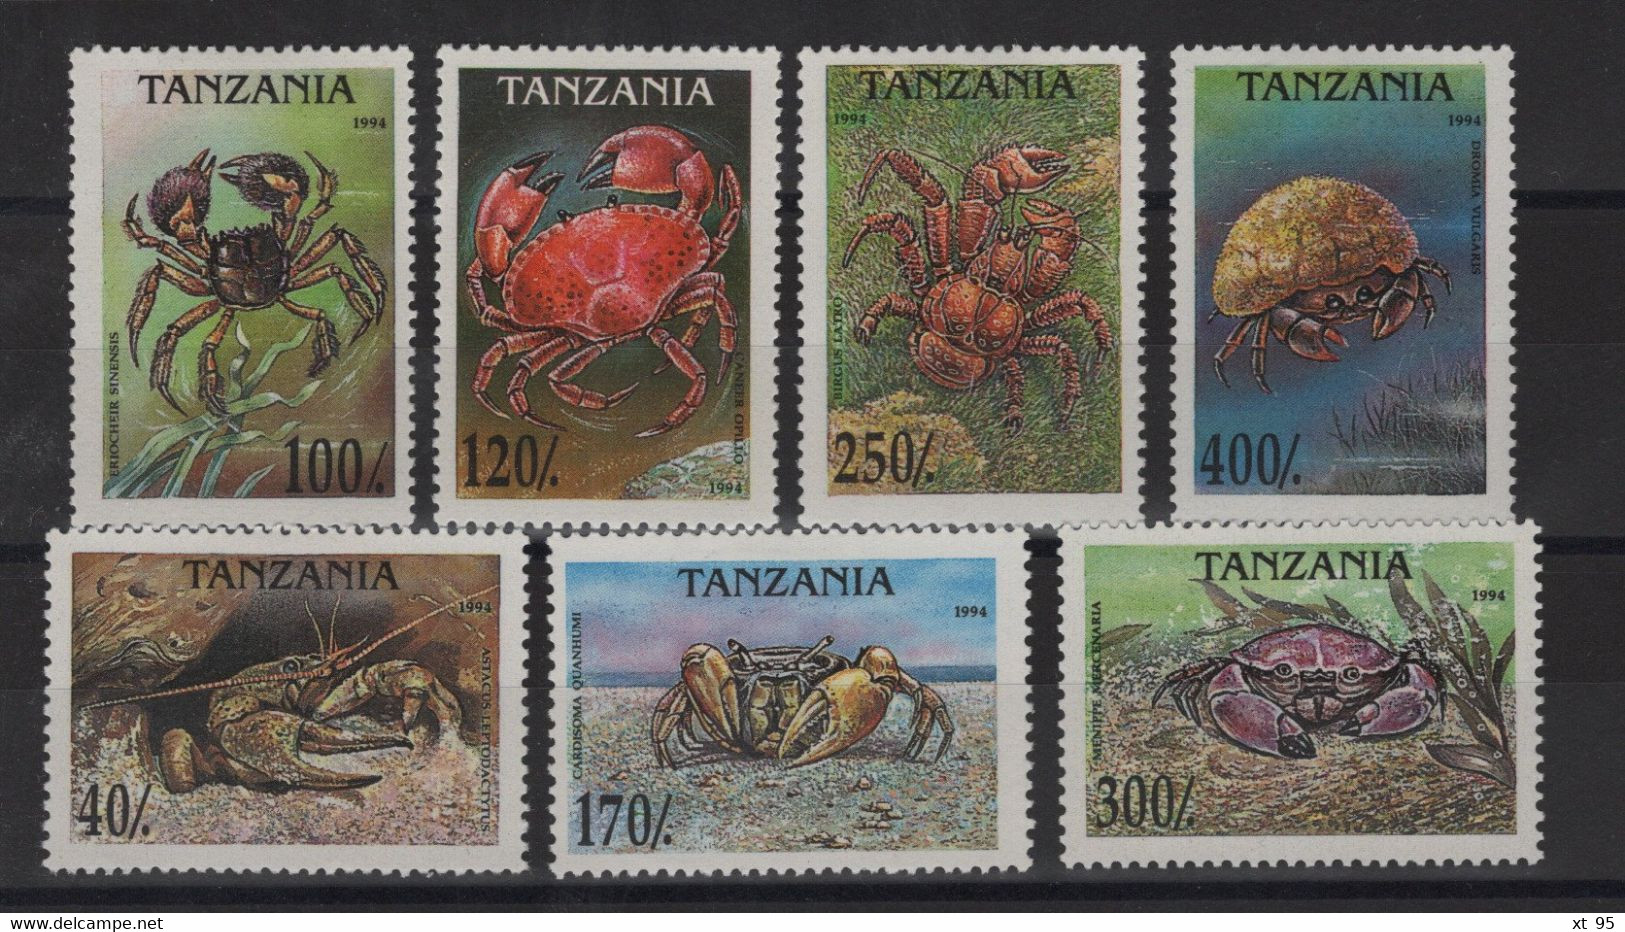 Tanzanie - N°1695 à 1701 - Faune Marine - Crustaces - Cote 7.25€ - * Neufs Avec Trace De Charniere - Tanzania (1964-...)